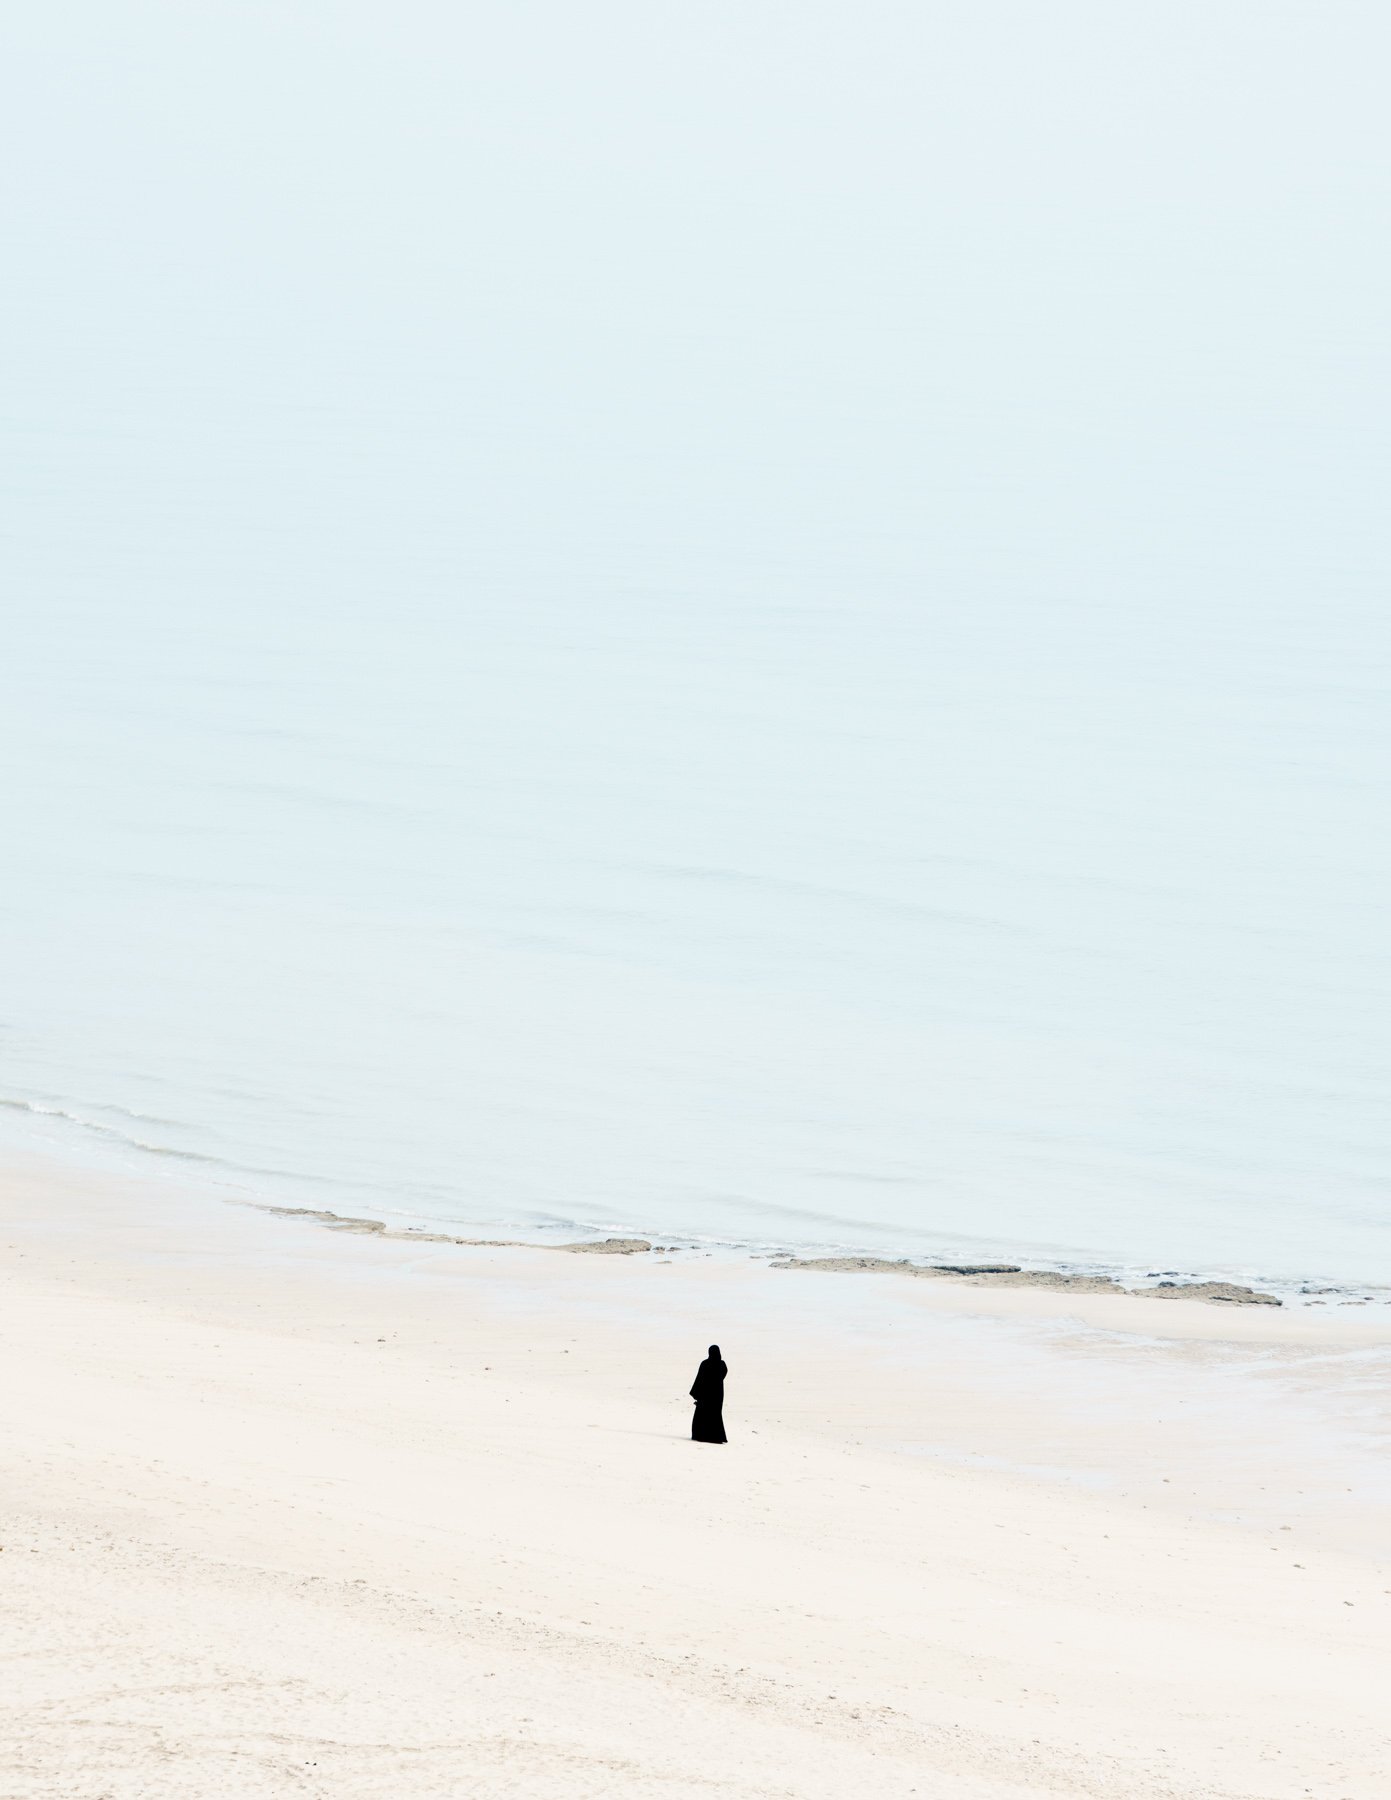  A woman walks along the beach on a misty autumn morning in Kuwait.   Salmiya, Kuwait. 2021 